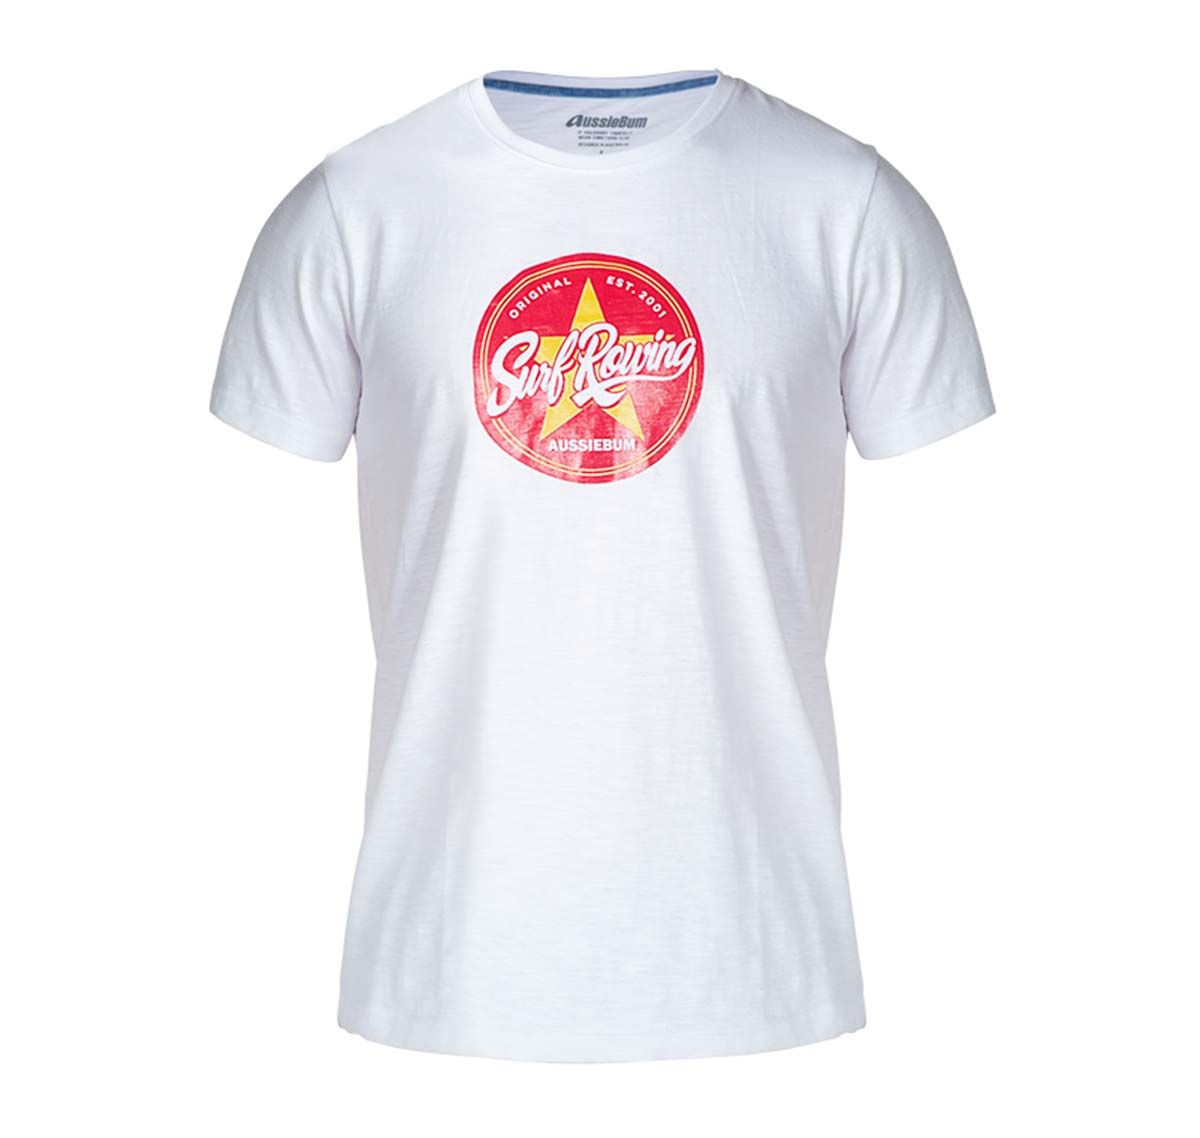 aussieBum Camiseta DESIGNER TEE STAR RED, blanco